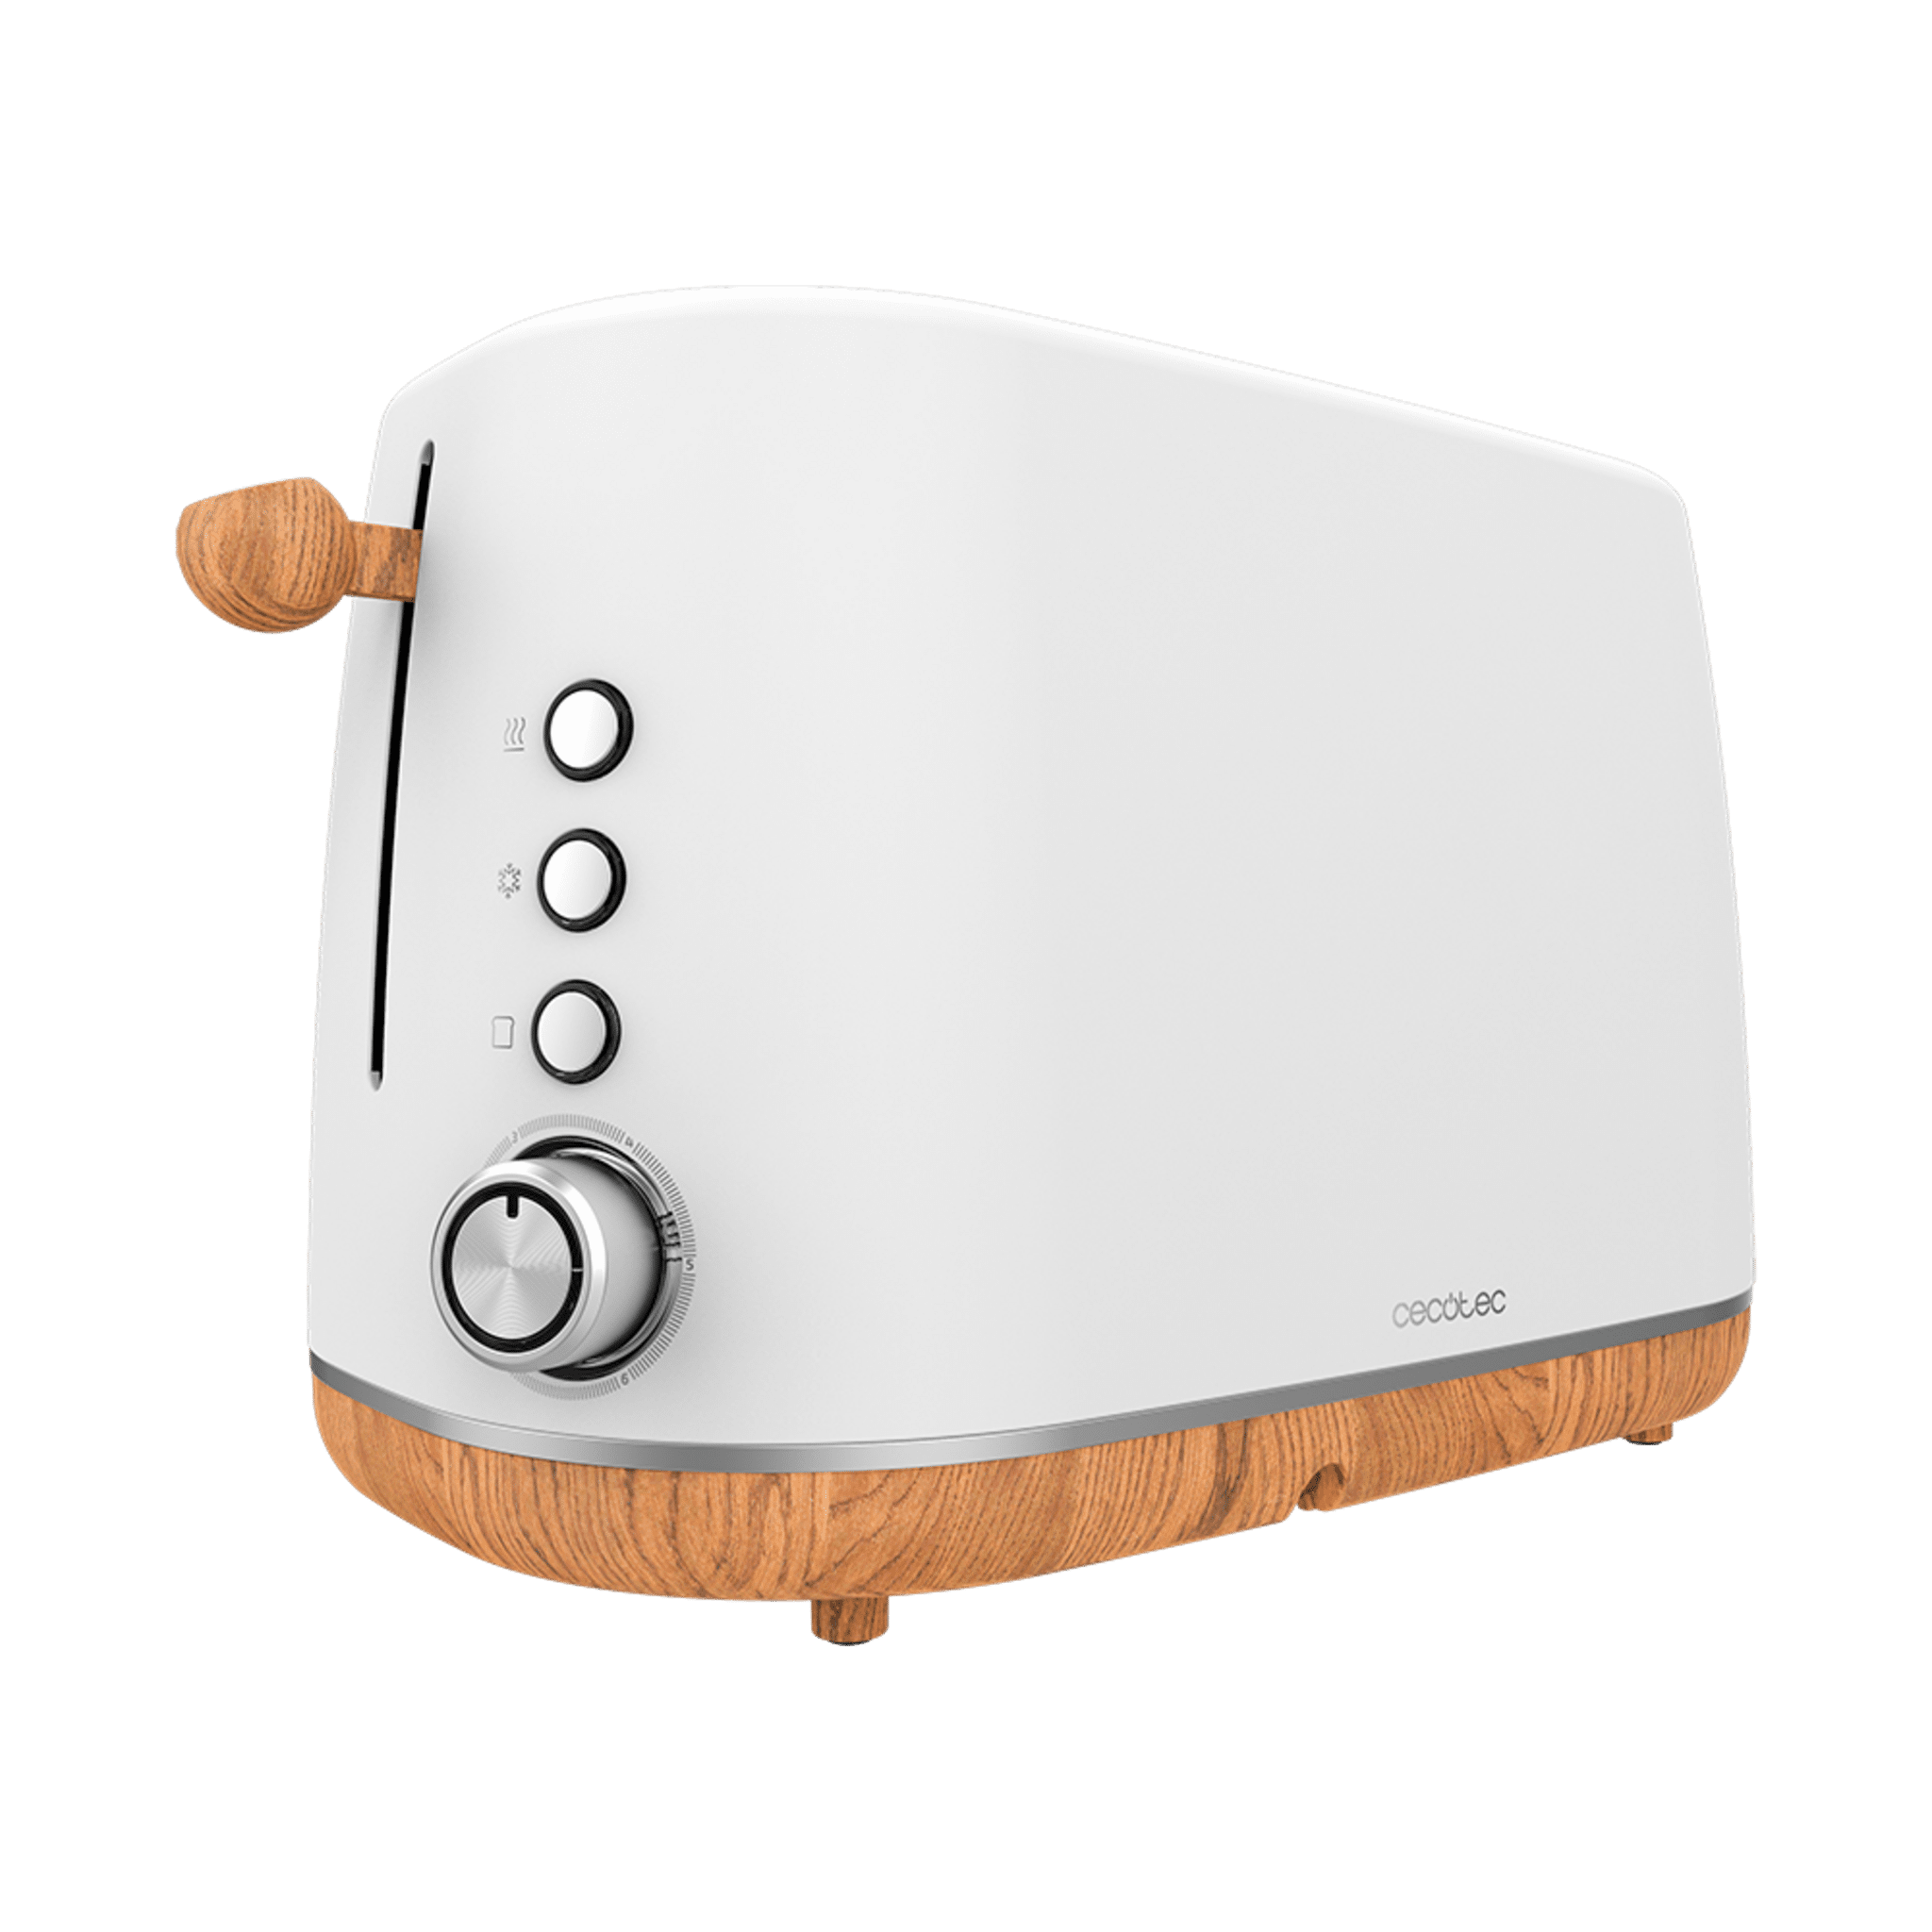 Tostador Digital TrendyToast 9000 White Woody. 900 W, 2 Ranuras extraanchas, Varillas superiores para calentar, Luz indicadora de Funcionamiento